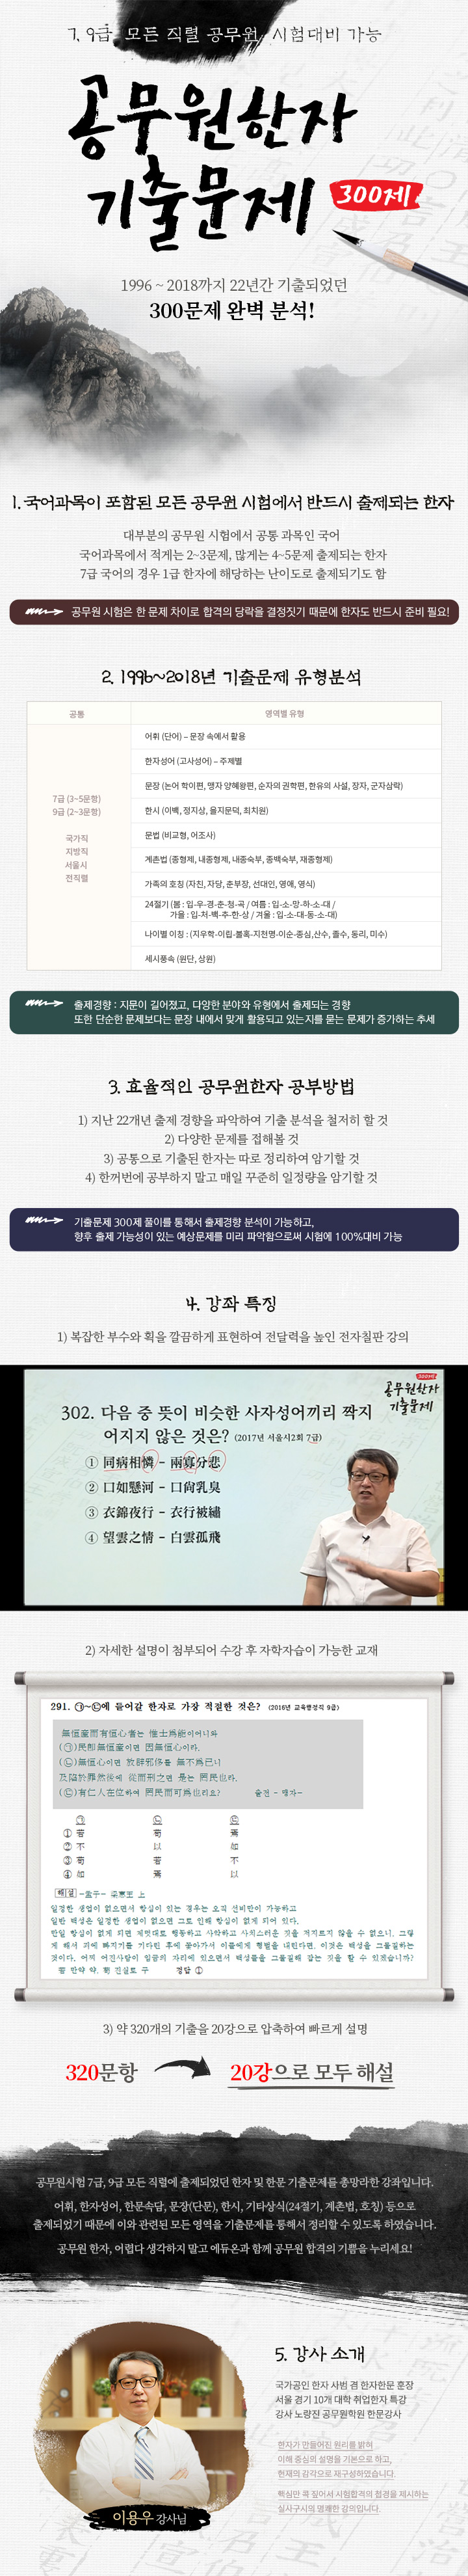 공무원한자 기출문제 300제 (7, 9급 전 직렬) 강좌 소개 - 에듀온